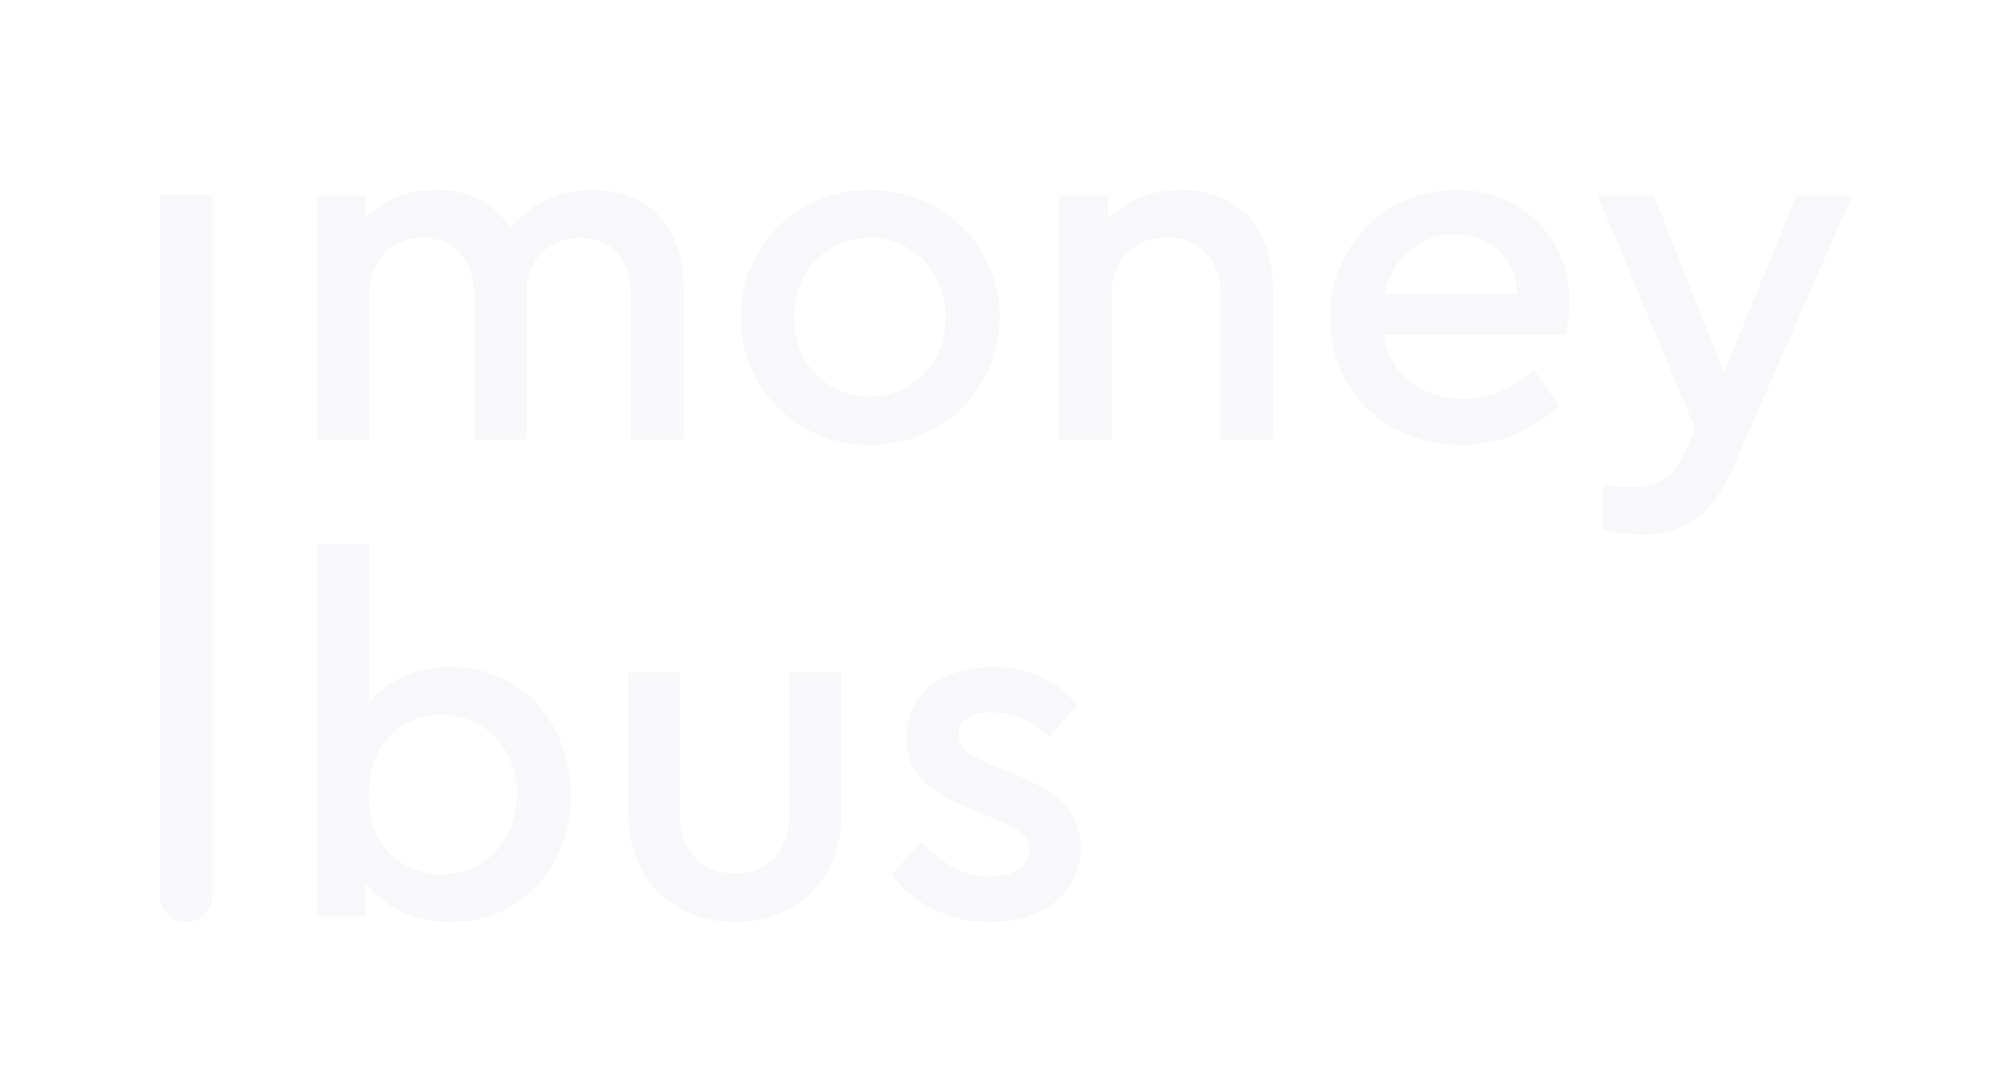 MoneyBus